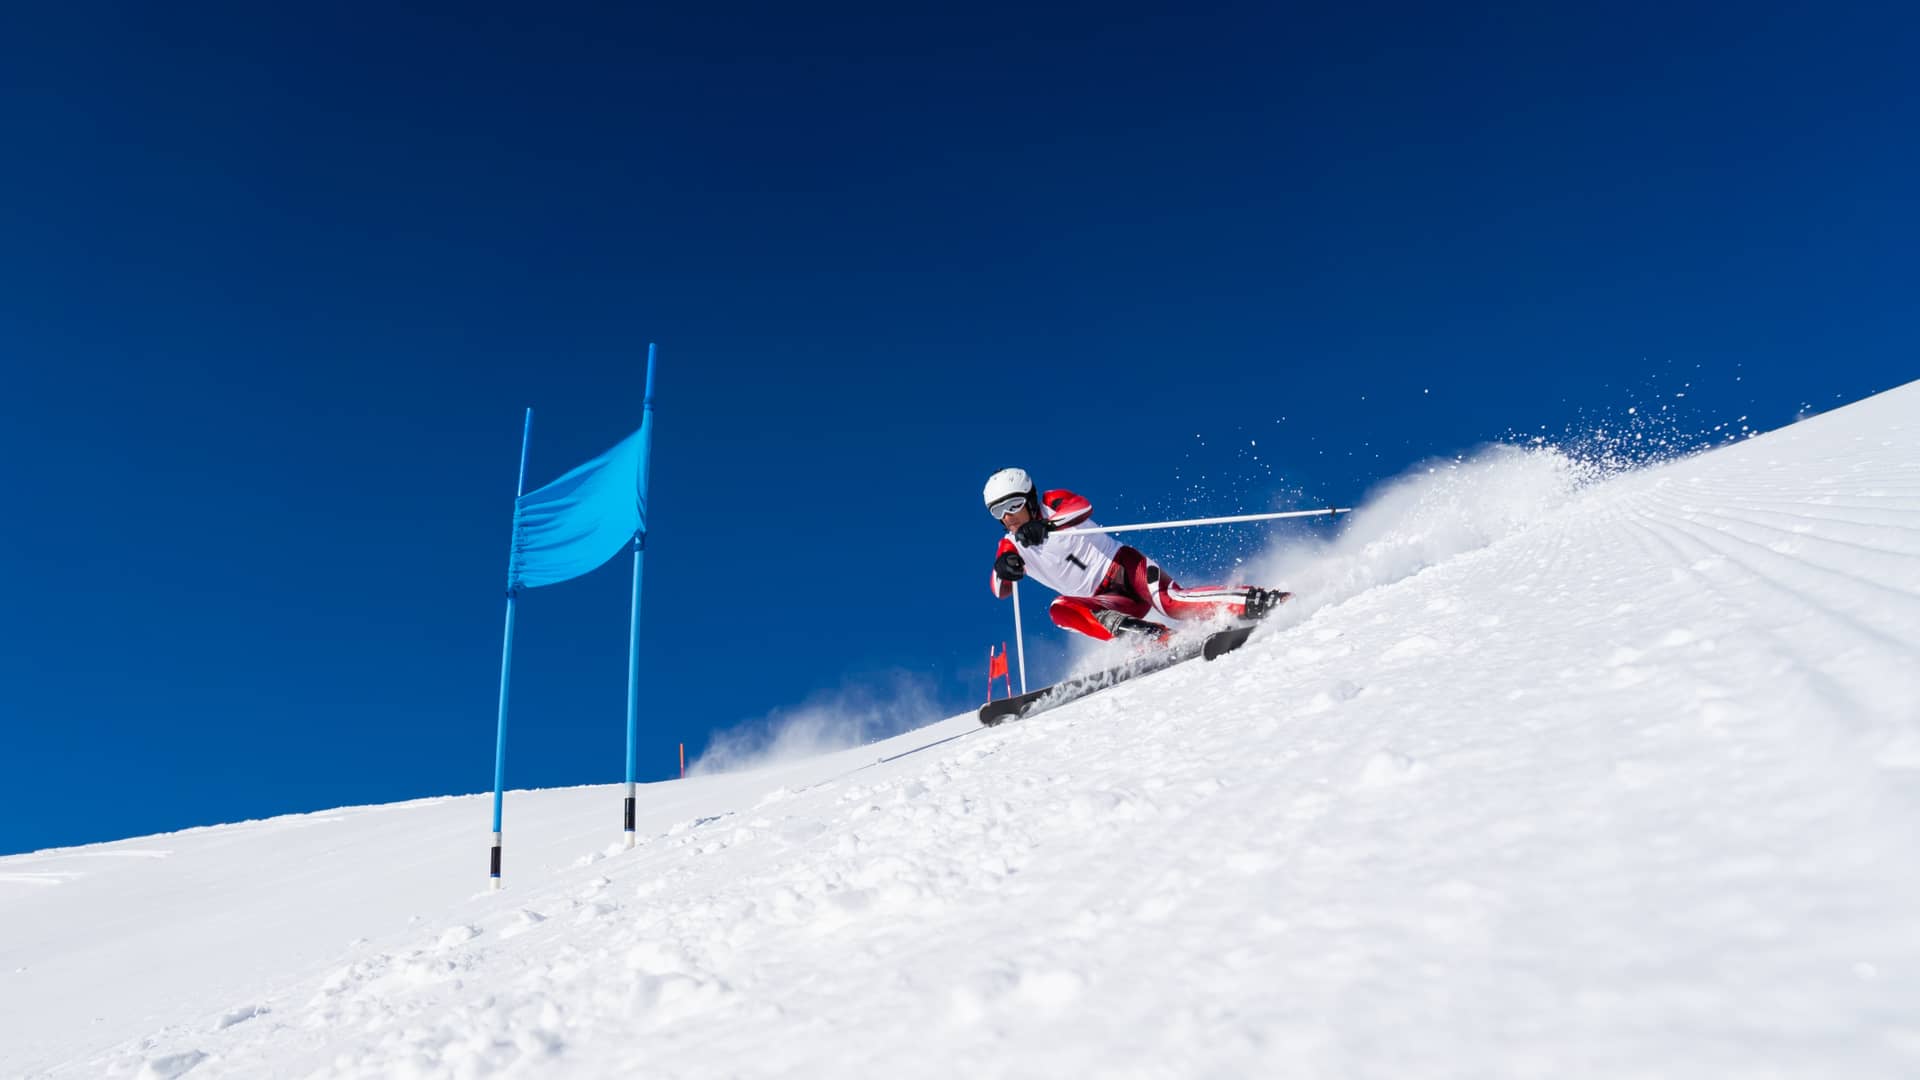 Seguro esquí fuera pistas: ¿cómo practicarlo?, coberturas y compañías